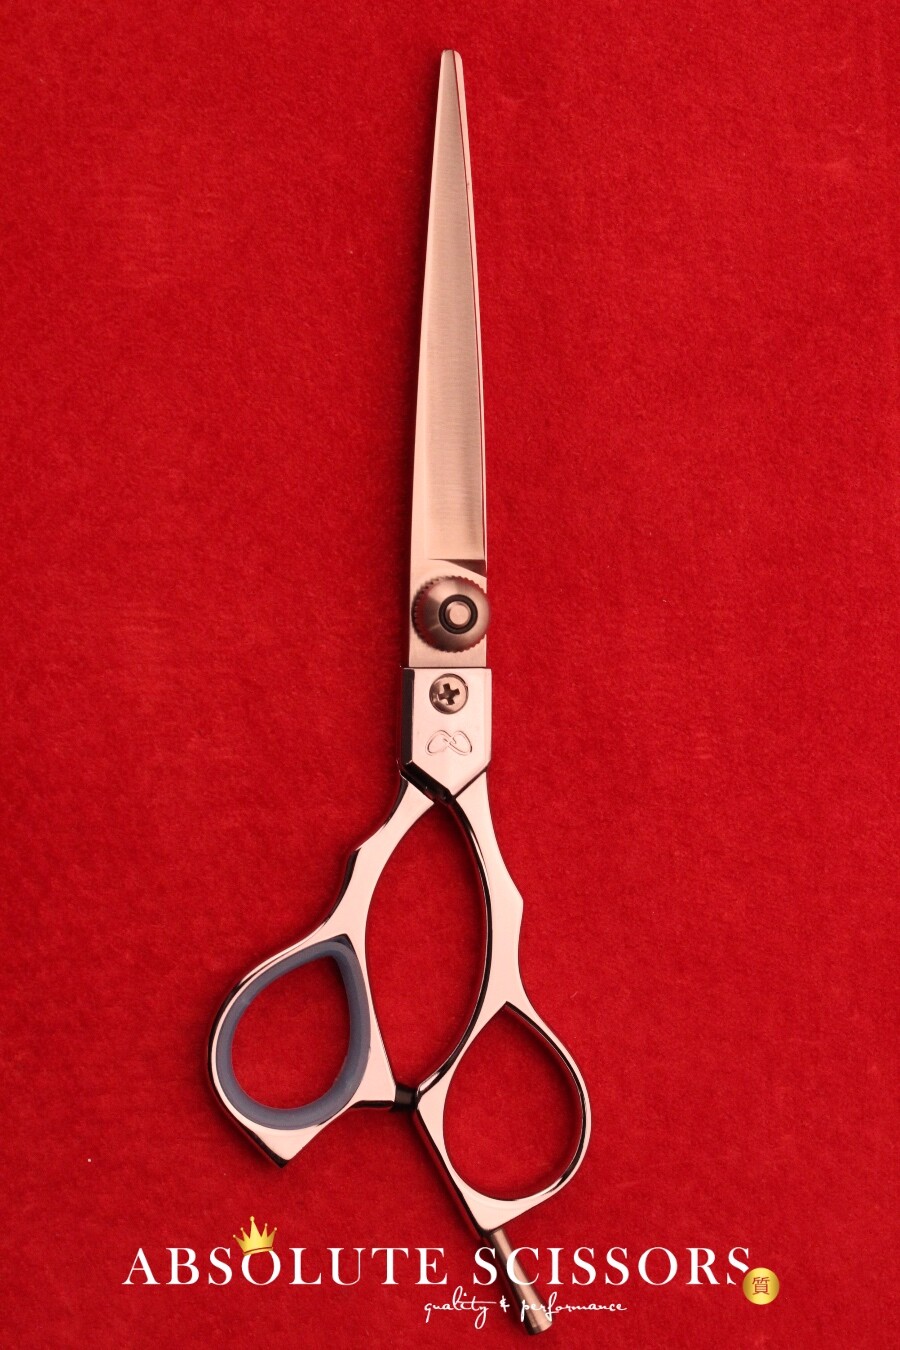 Yasaka M600 6 Inches – Japanese Hair Scissors - shears